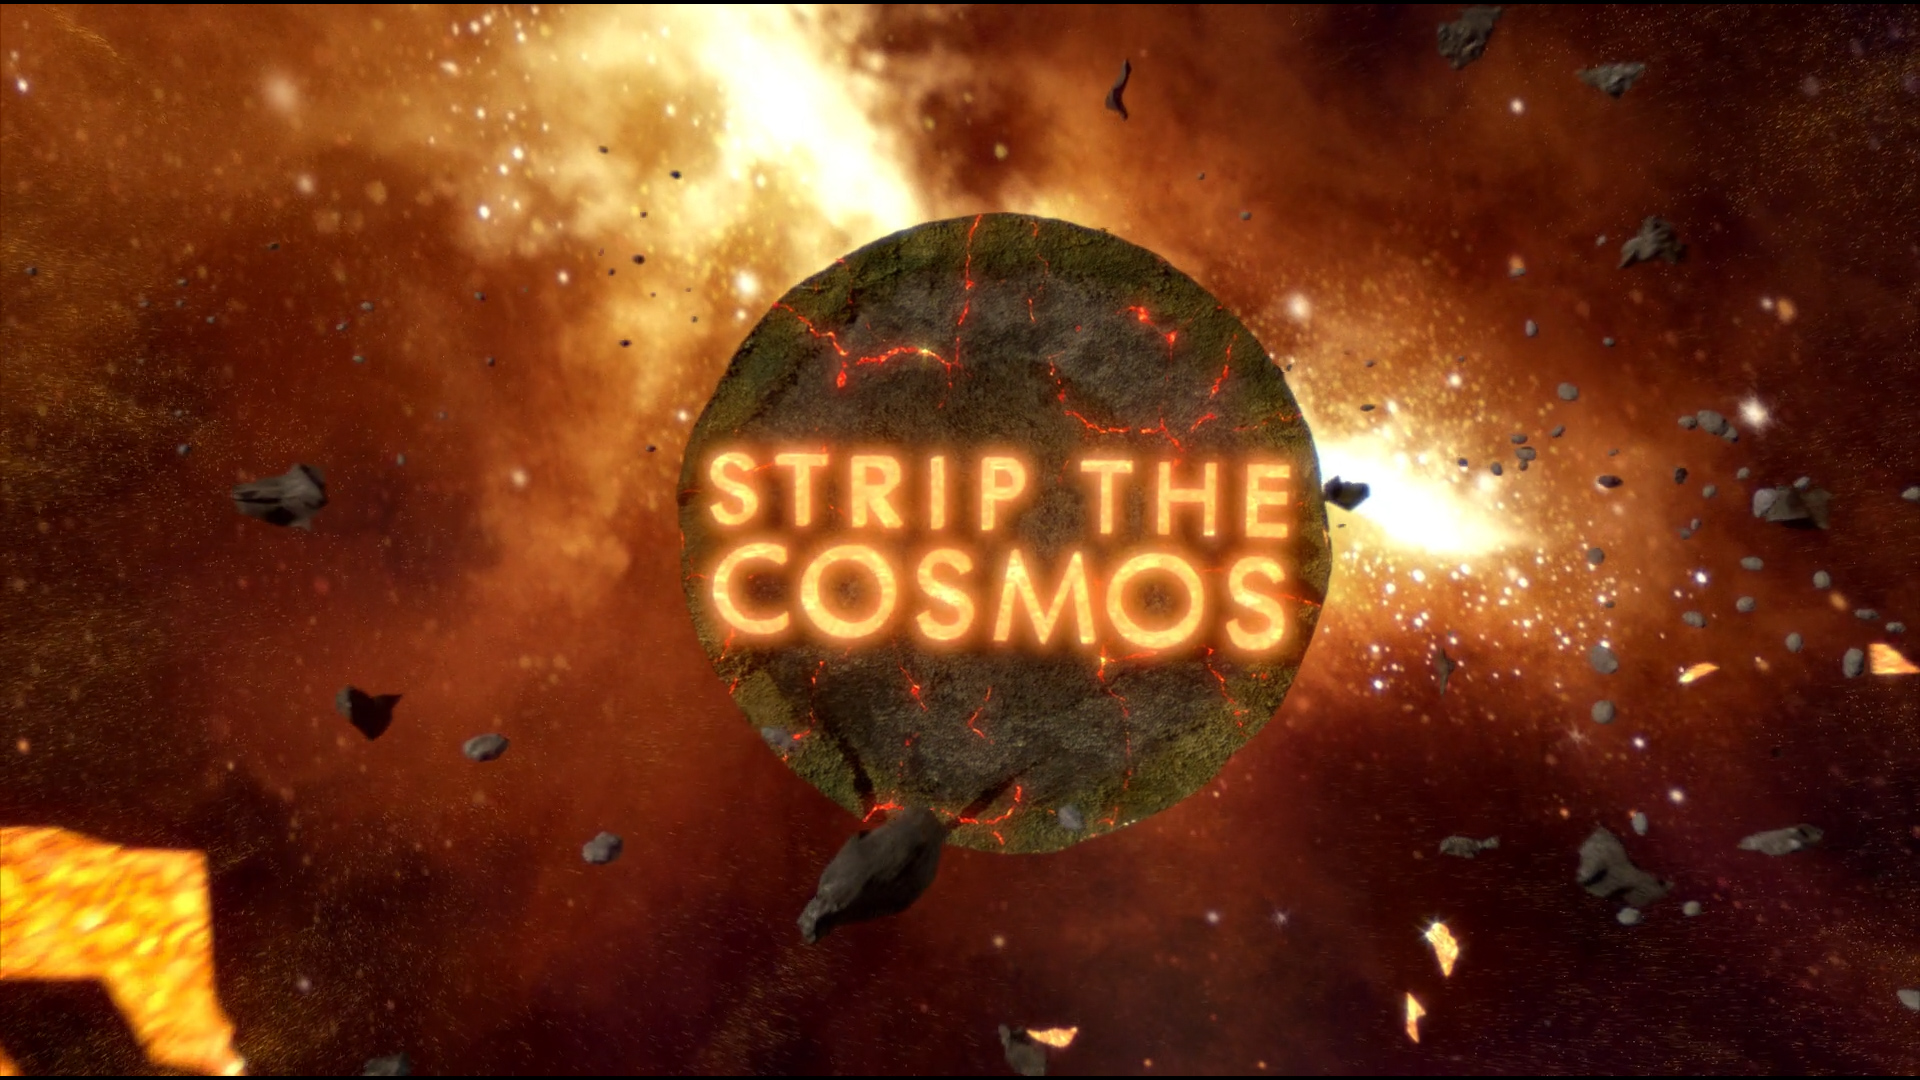 Digital Dimension explore les galaxies pour la série documentaire Strip the Cosmos